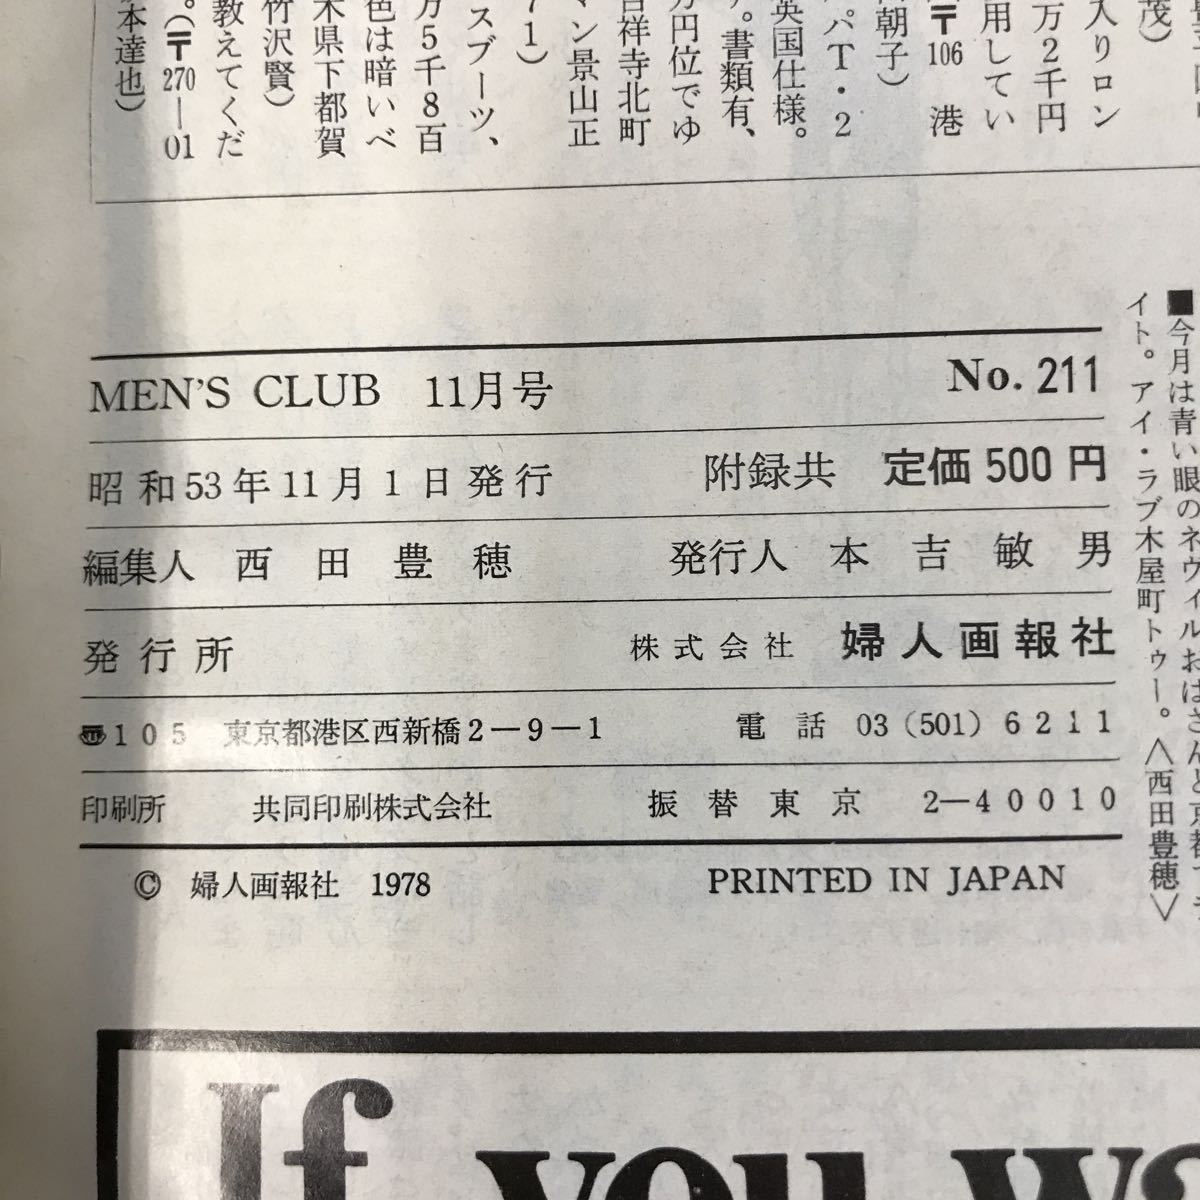 B18-051 MEN\'S CLUB мужской Club 1978 год 11 месяц номер No.211 дополнение есть ( каталог ( american * Schic )) женщина .. фирма вода .. есть трещина есть 